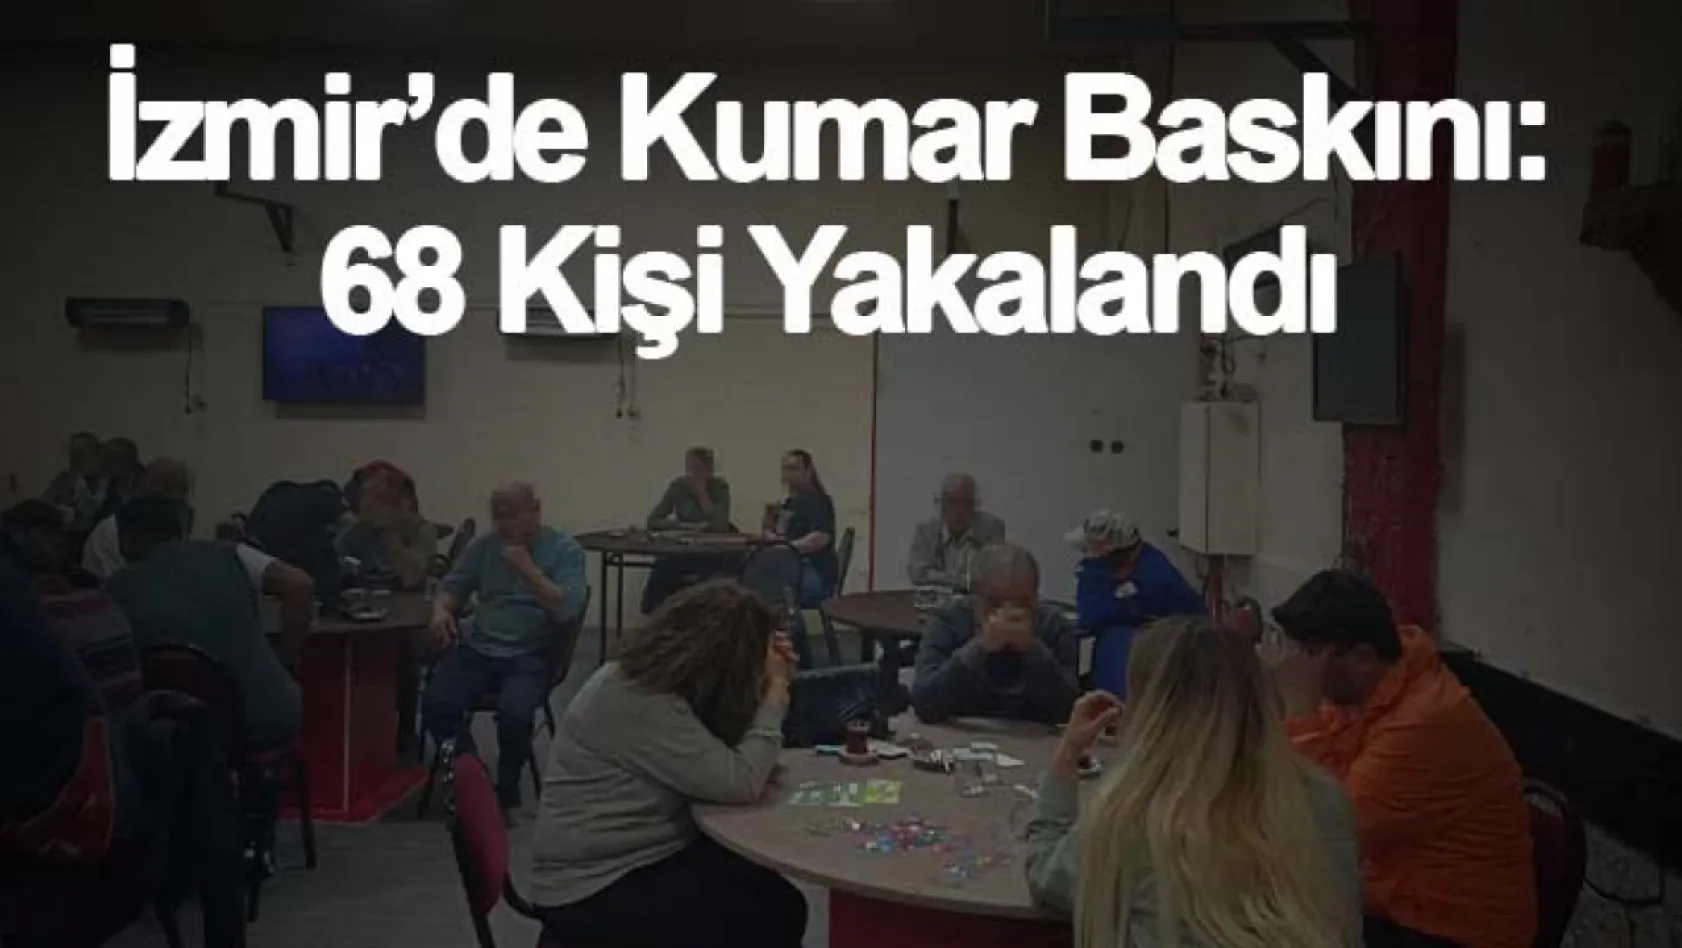 İzmir'de kumar baskını: 68 kişi yakalandı